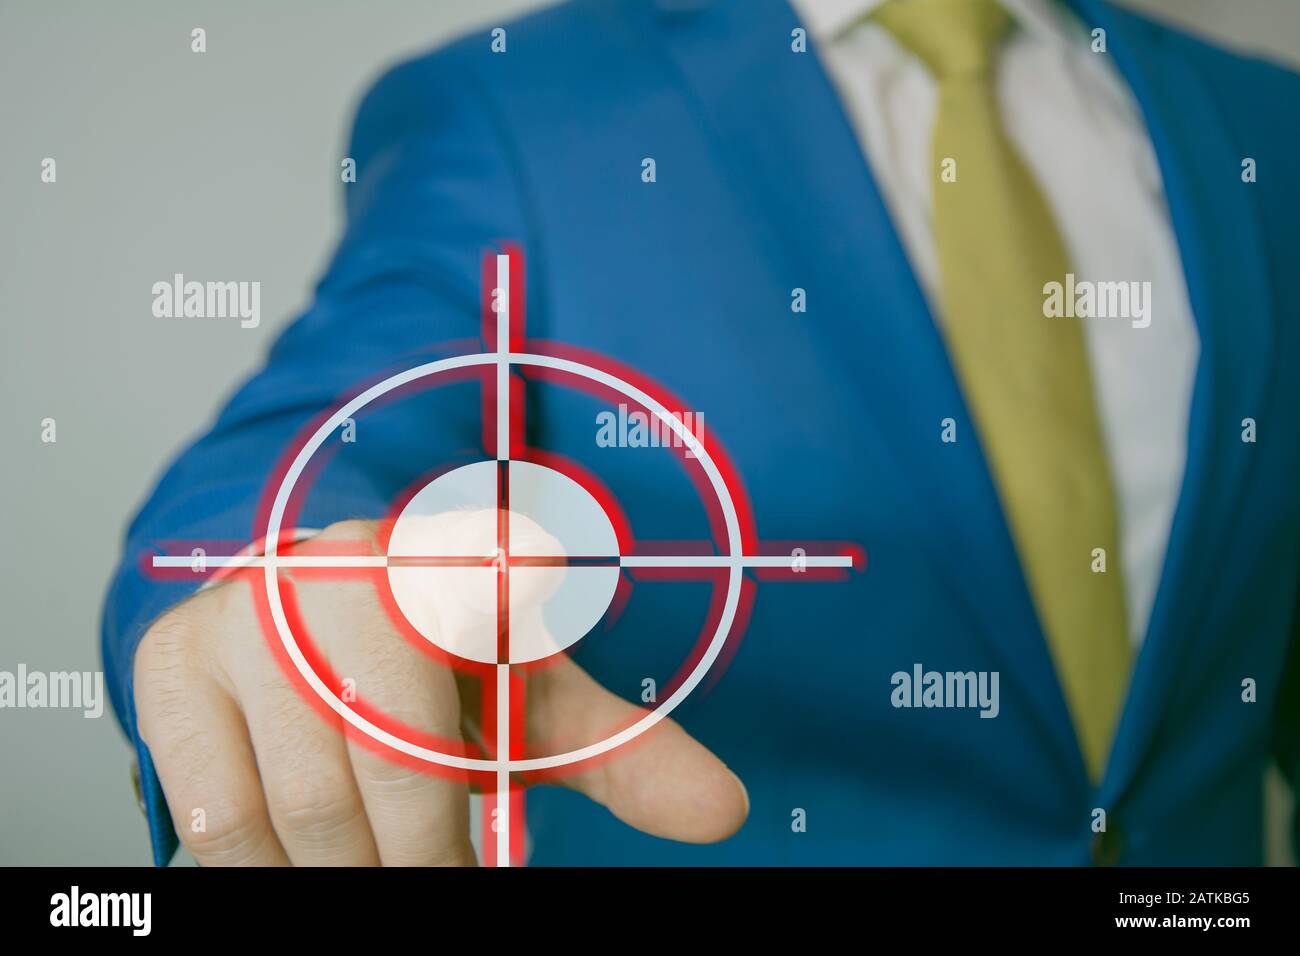 Geschäftsmann wählt die Schaltfläche "Dartboard" auf dem virtuellen Bildschirm, "Business Success Concept", "Target on Virtual Screen", "Map Pointer Navigation Concept", Stockfoto